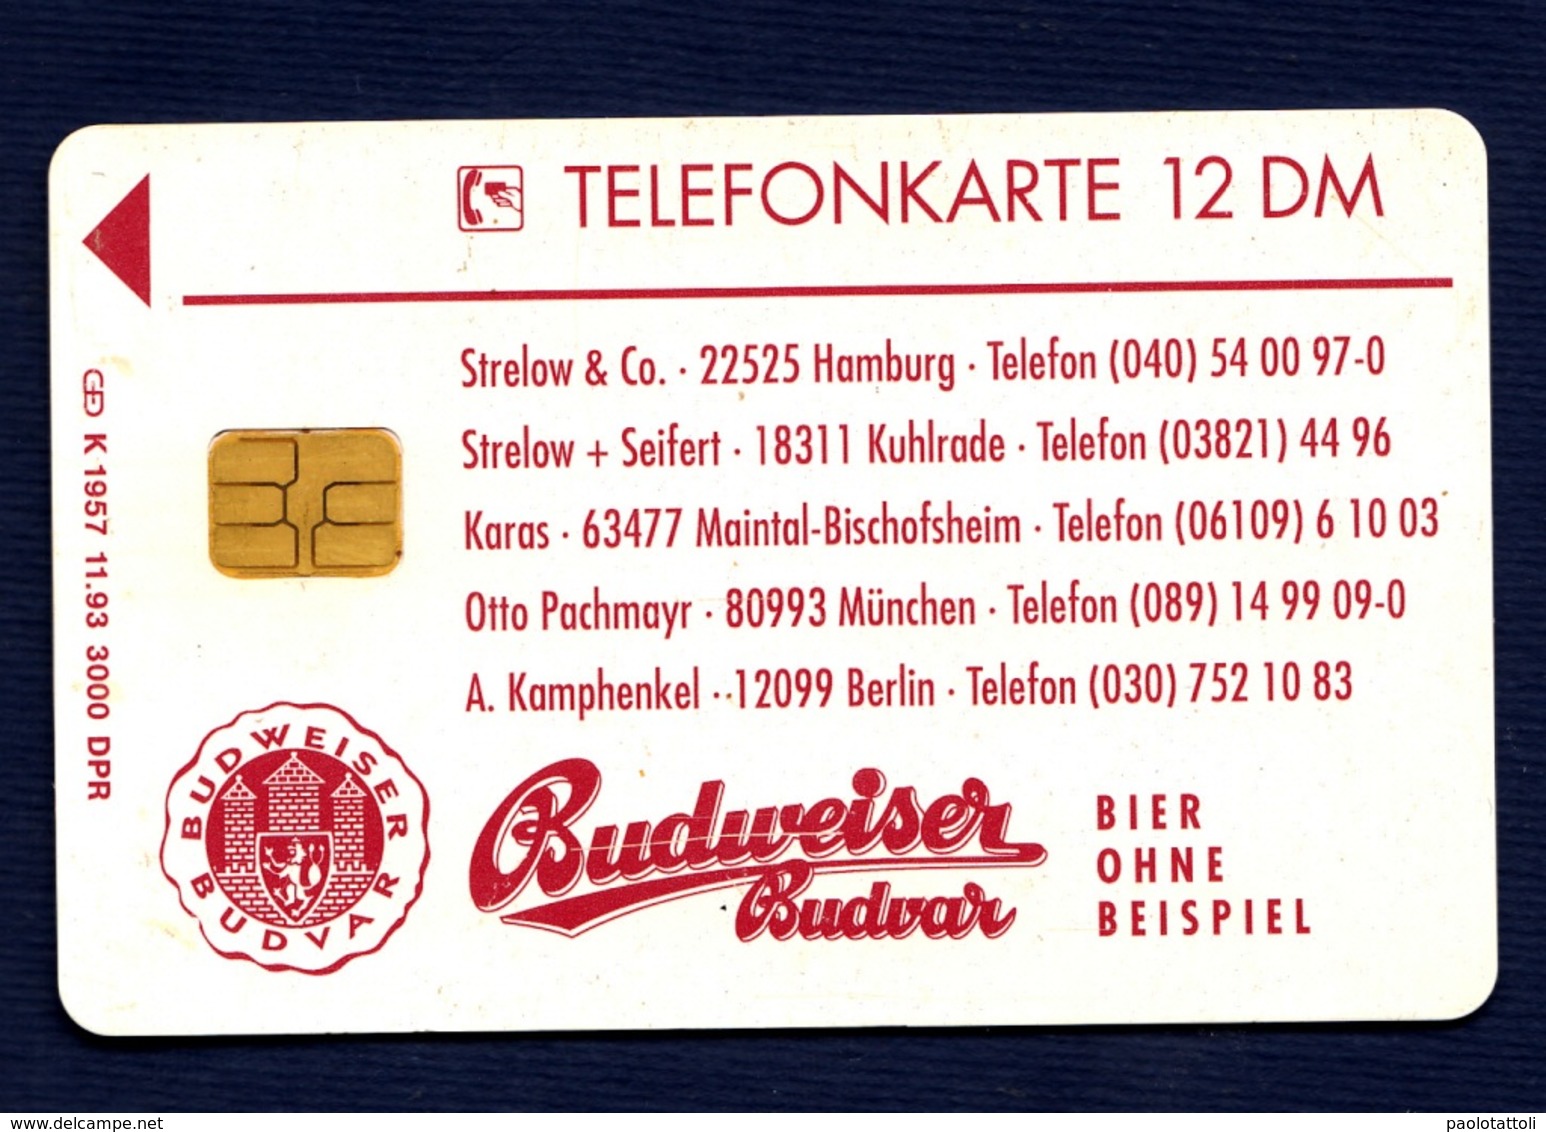 Germania, Germany- Budweiser Budvar, Bier Ohne Beispiel. Used Phone Card With Chip. 12DM Telekom. Exp.11.93 - K-Series : Customers Sets